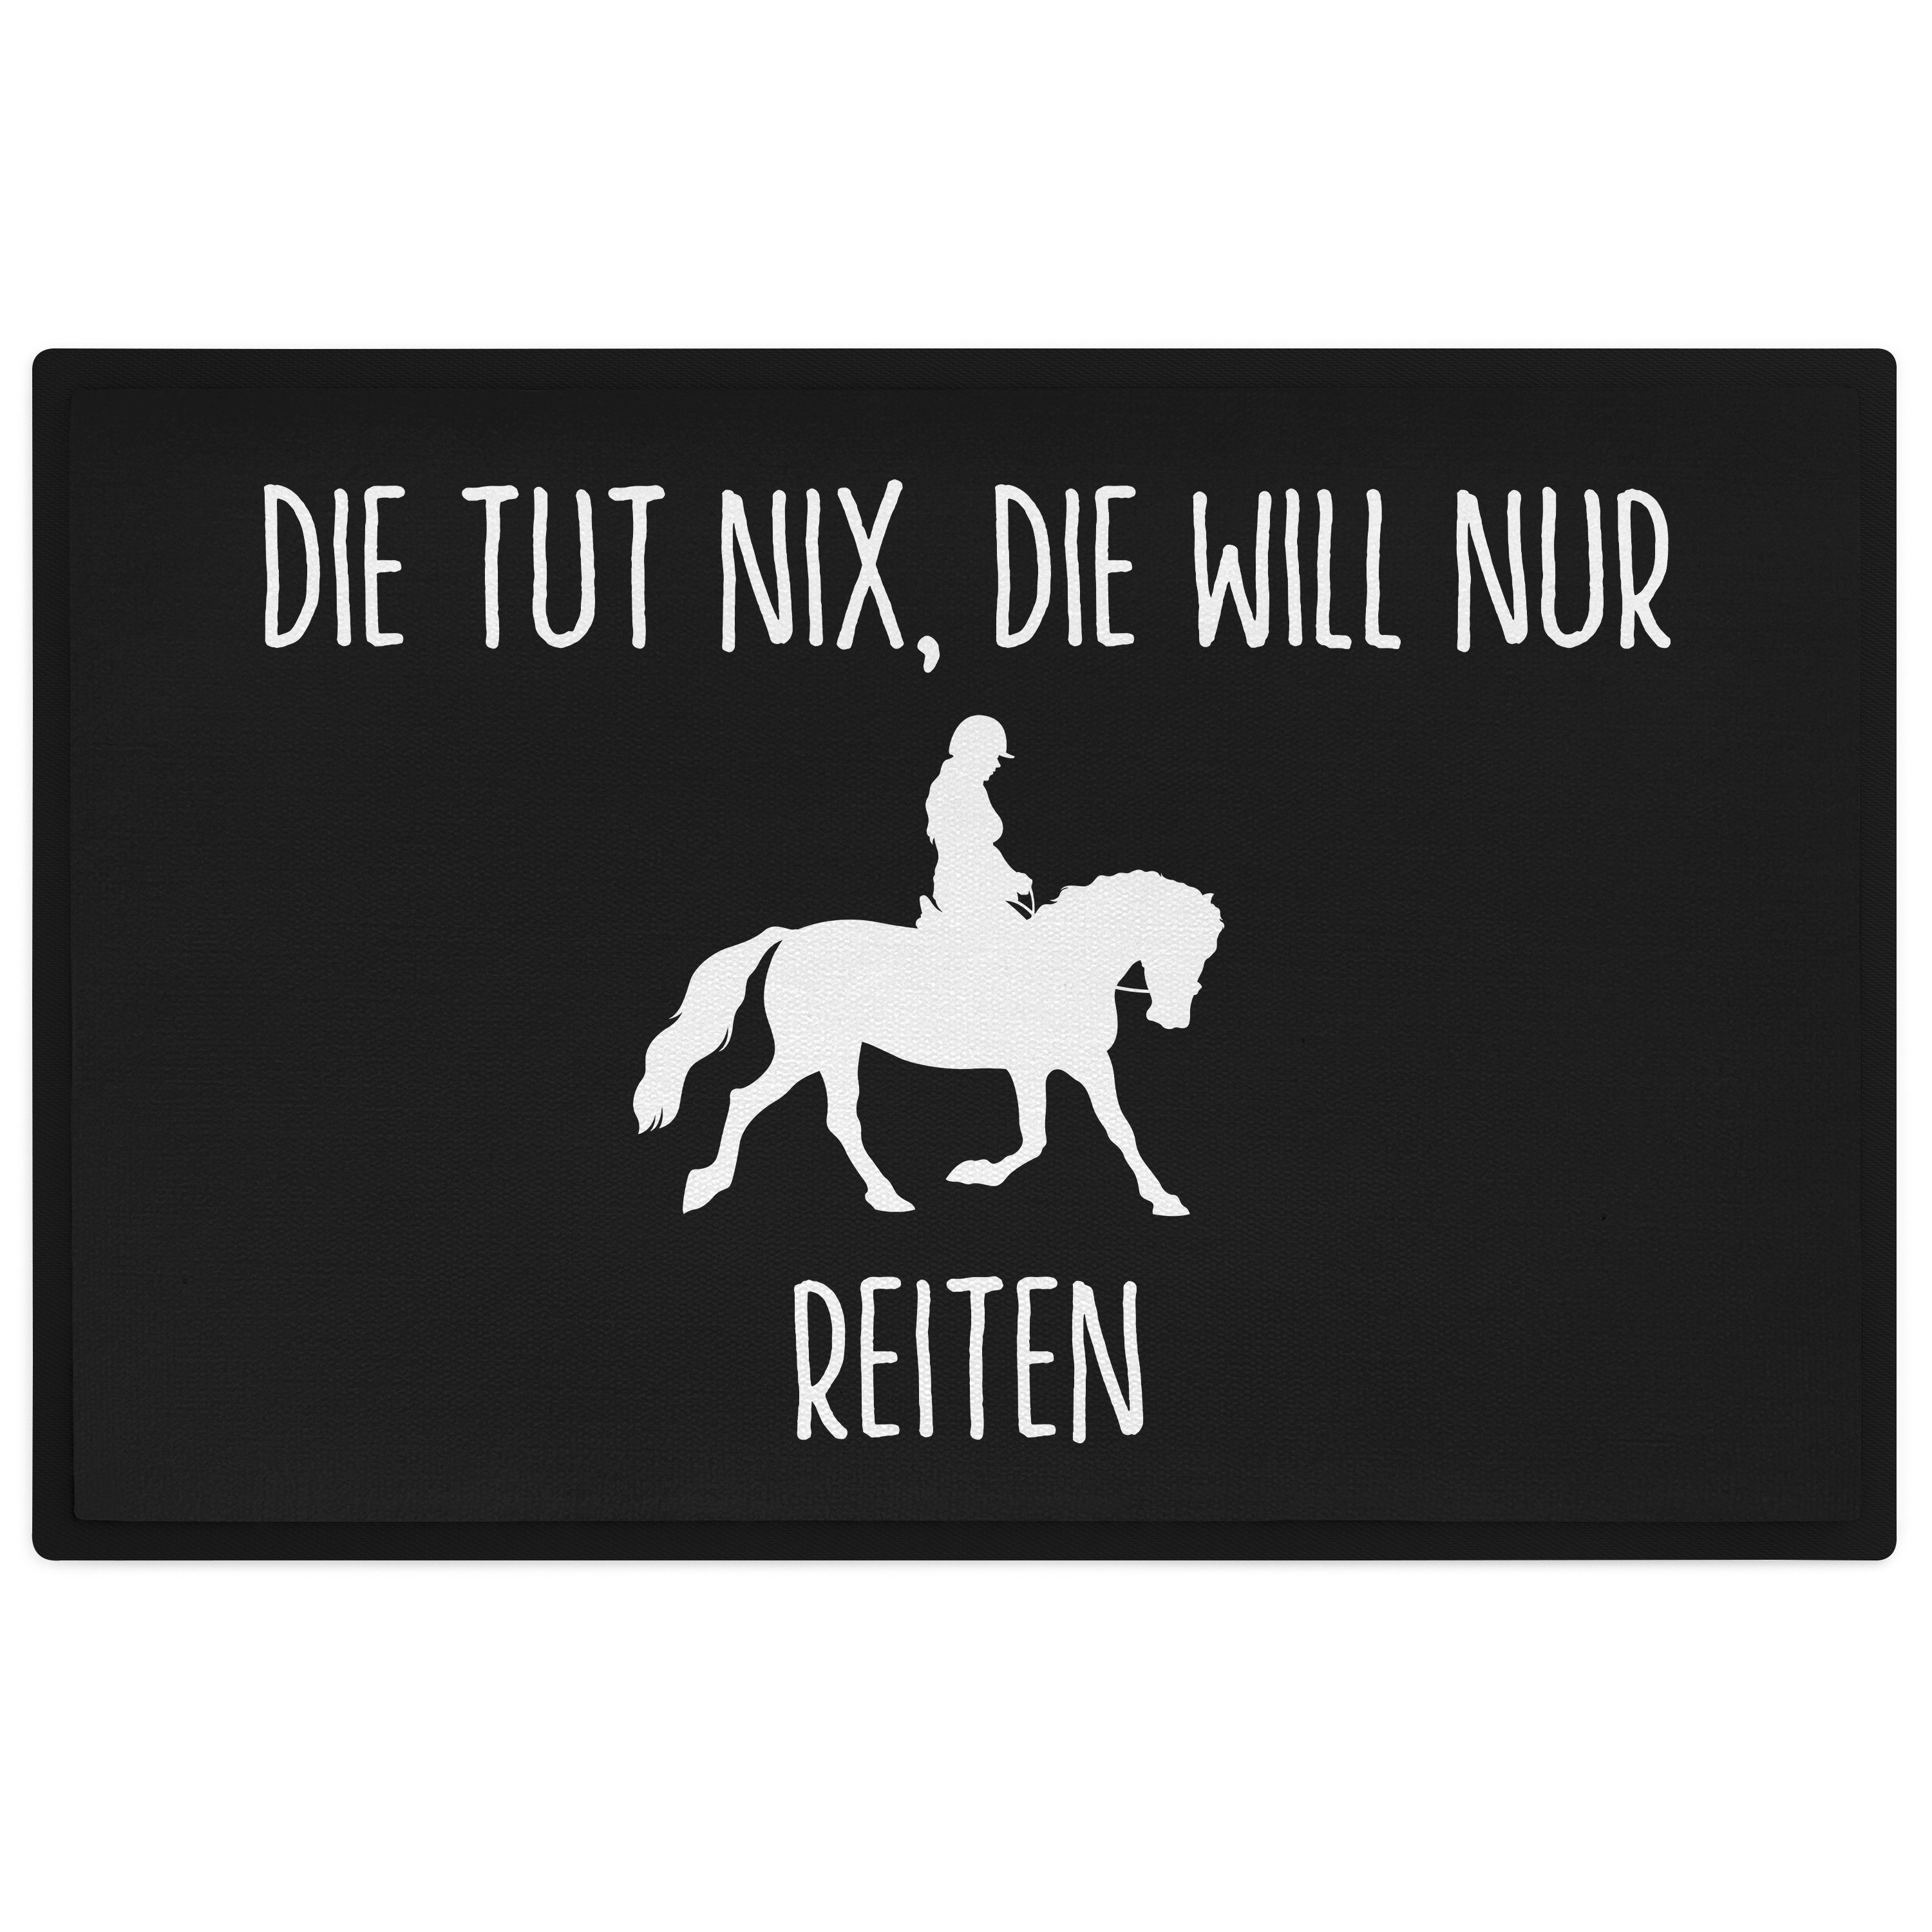 Will Nur Fußmatte Reiten Pferde Tut Reiterin Trendation Die Die Geschenk Fußmatte Nix Reit,